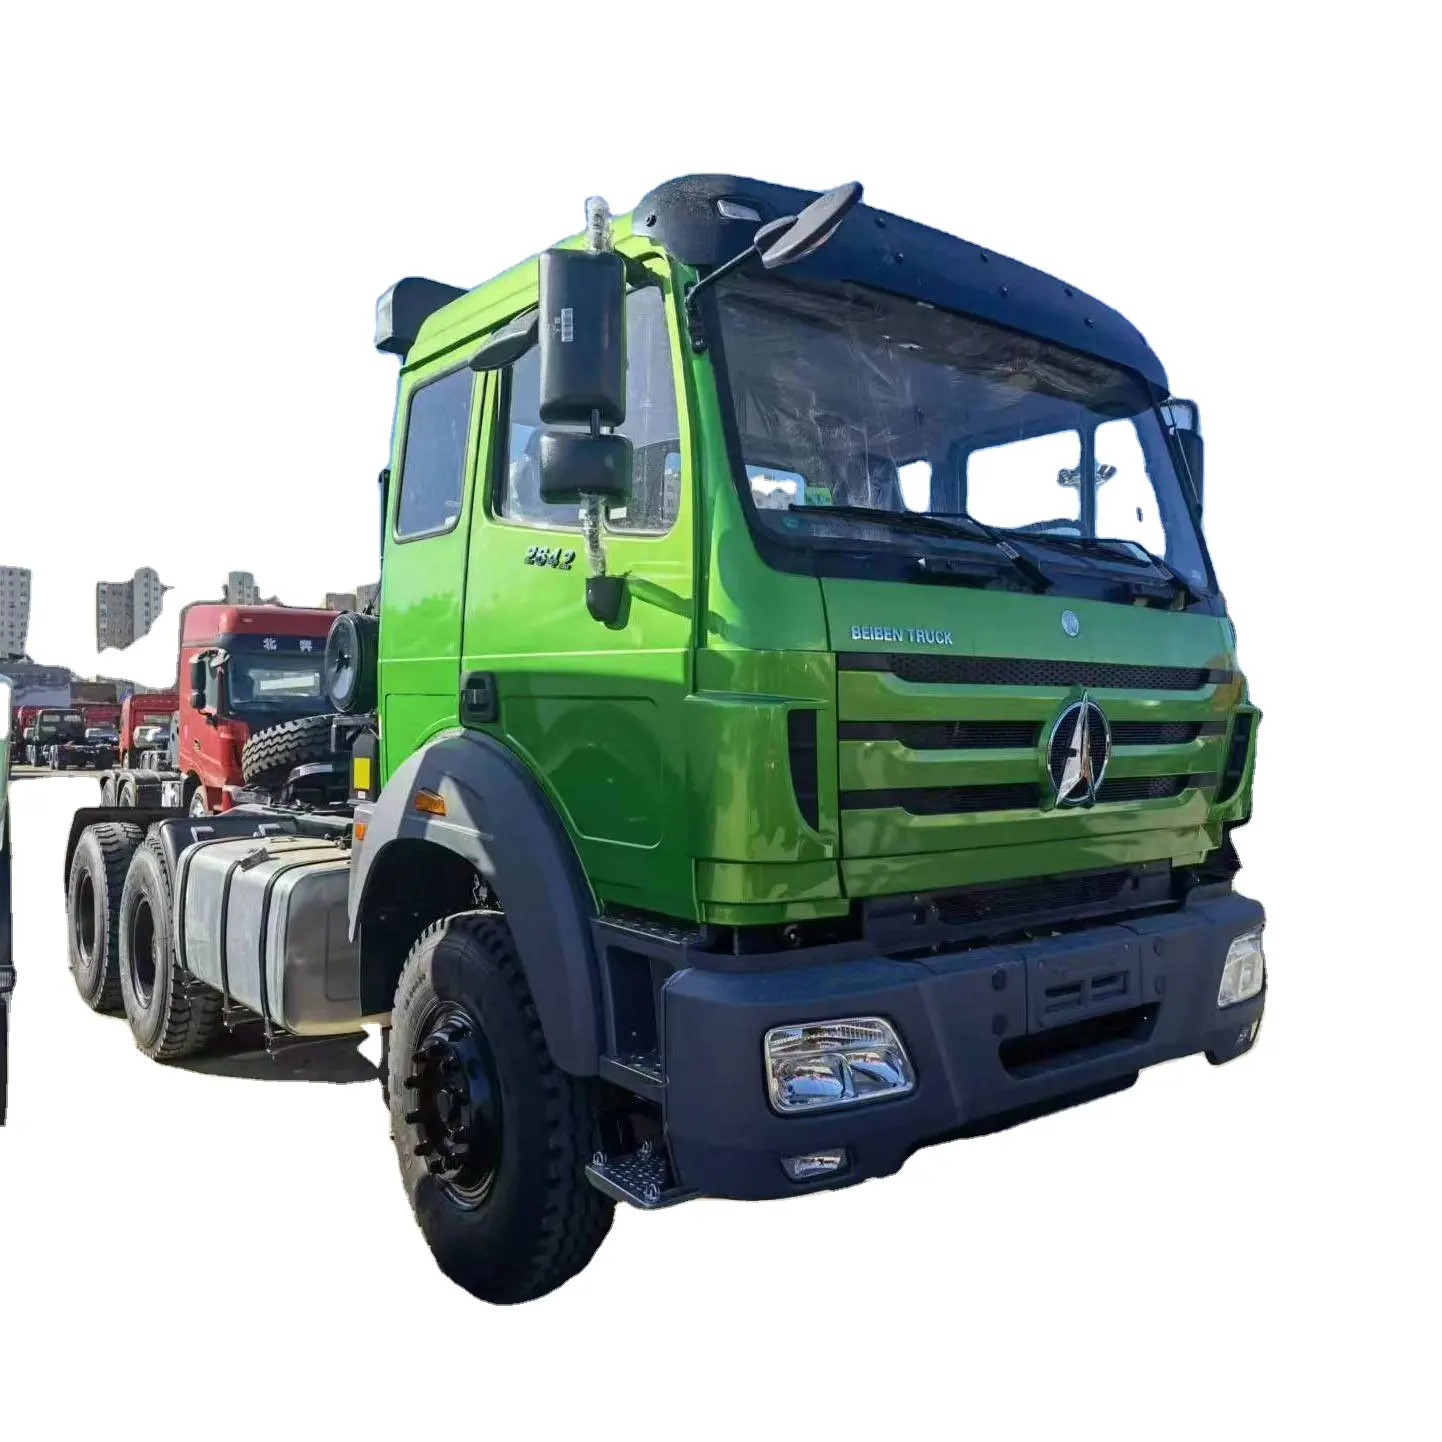 चीन में बिक्री के लिए 4X2 शैकमैन सेमी मिनी कम कीमत वाले ट्रेड ट्रैक्टर ट्रक